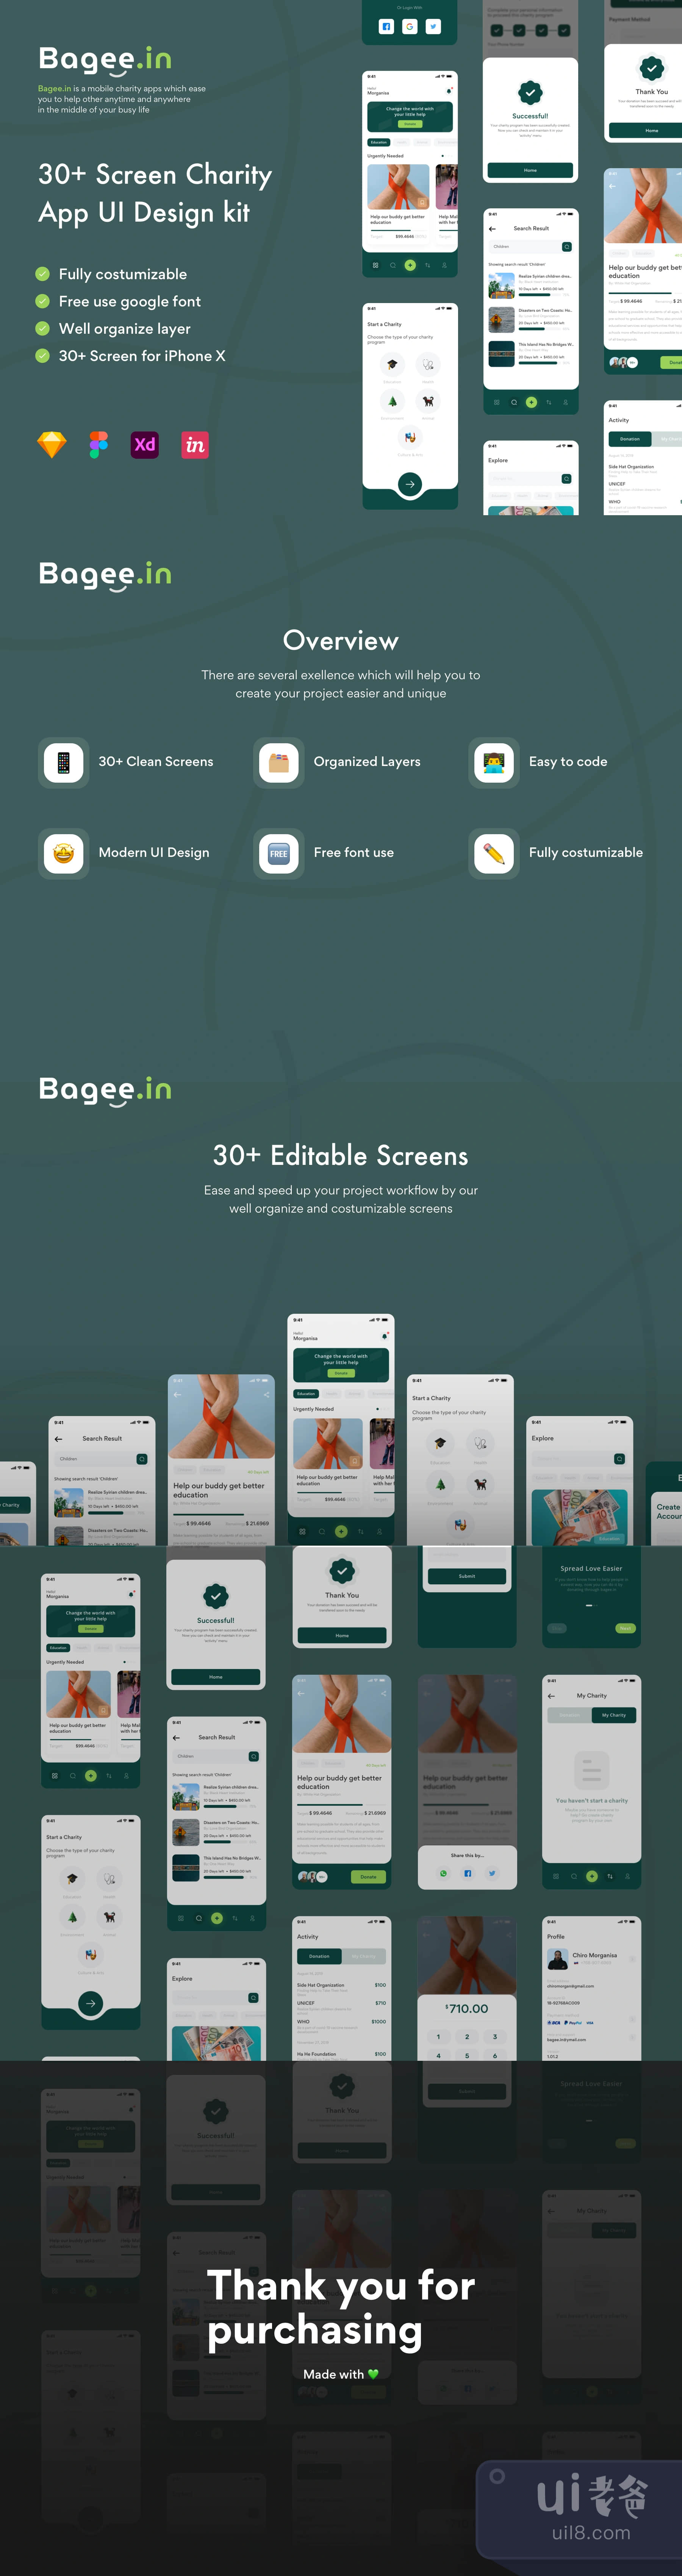 Bageein 公益慈善App设计插图1